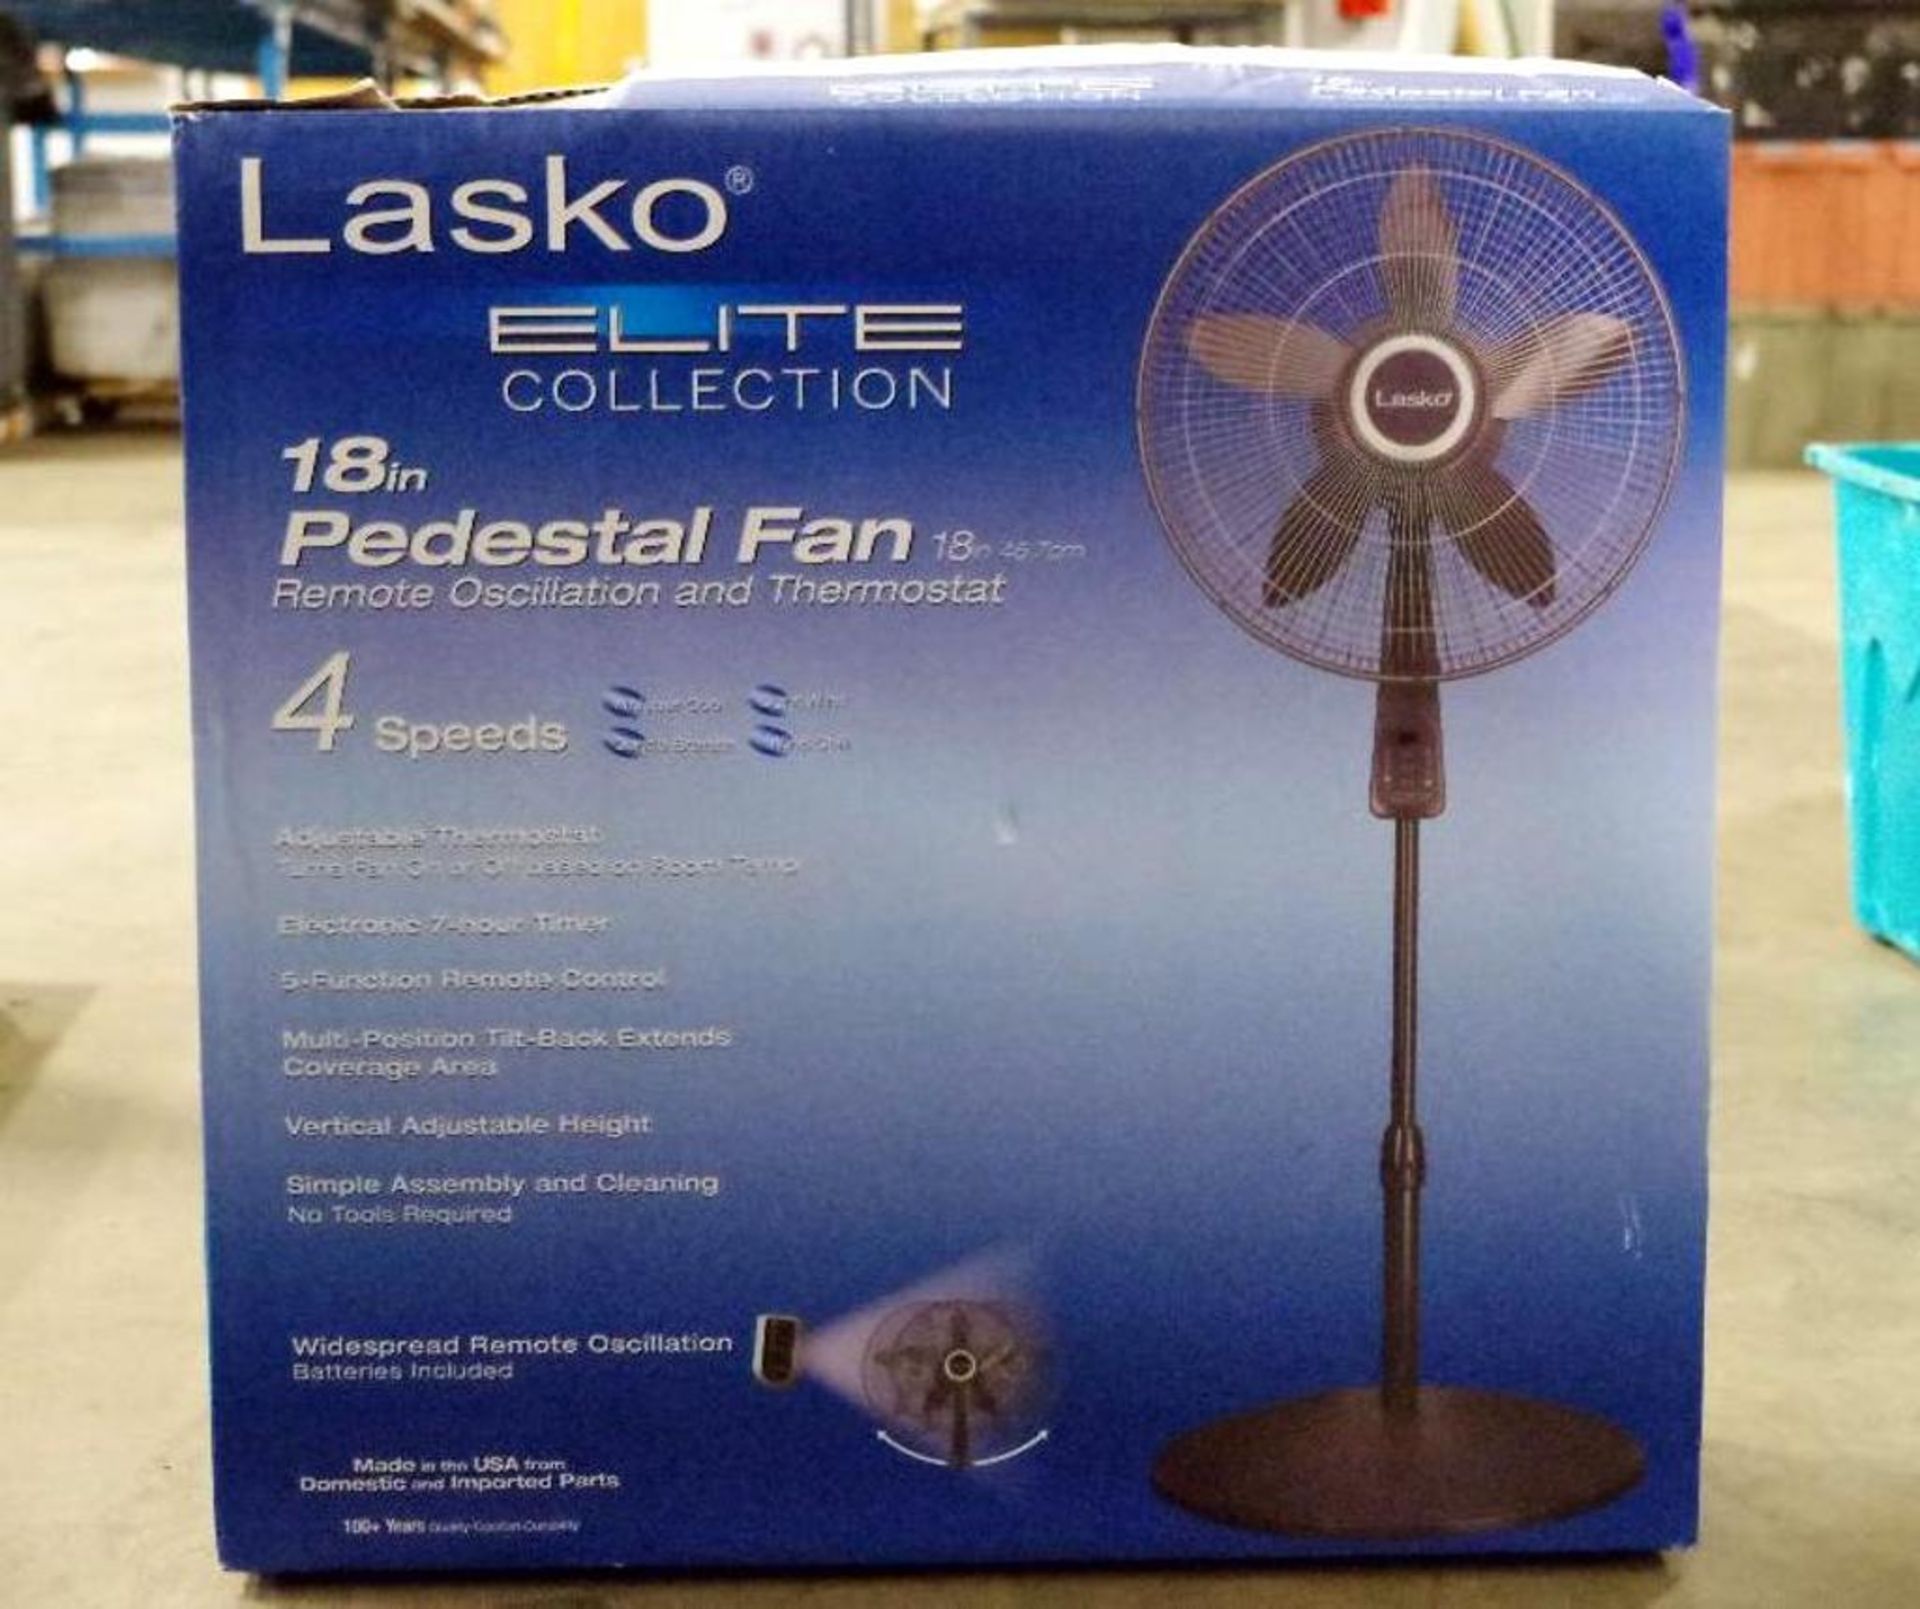 LASKO 18" Pedestal Fan - Image 2 of 2